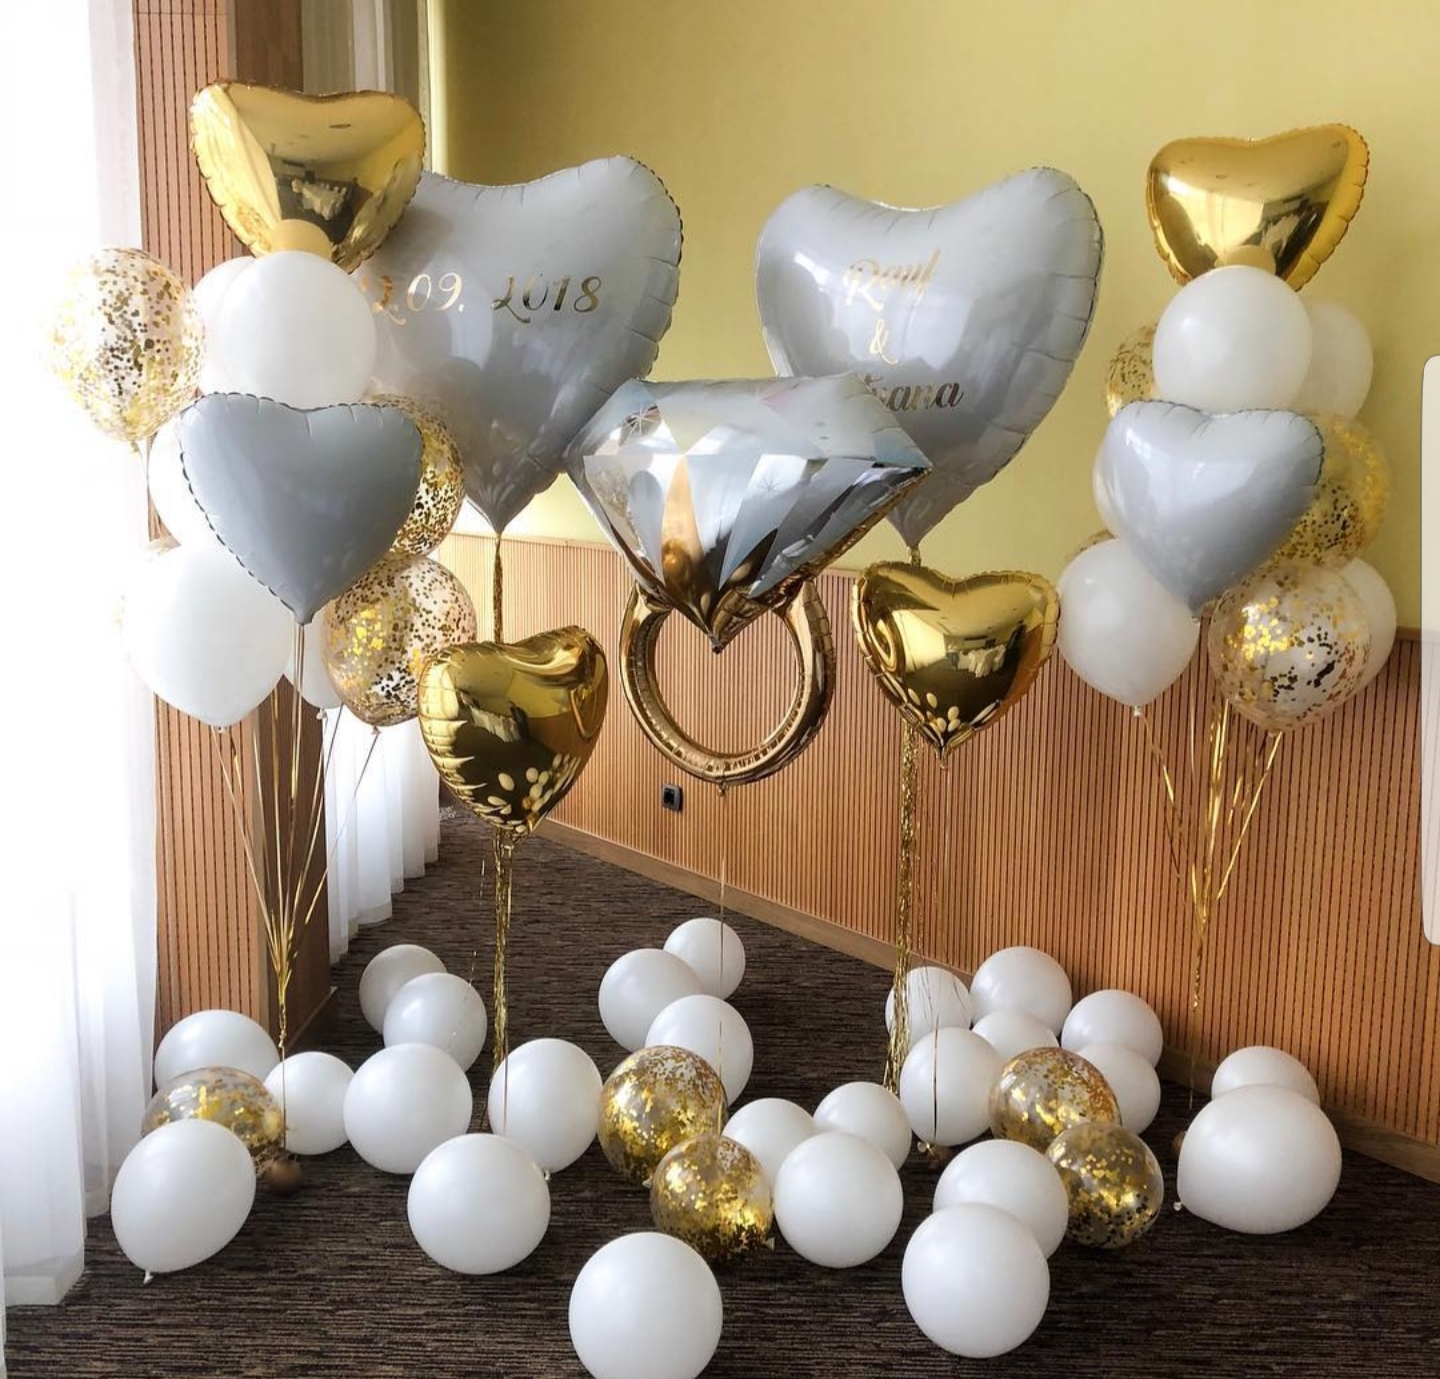 🥂Купить шары на годовщину 👩‍❤️‍👨 свадьбы — в Москве | Шарики на 👰 юбилей свадьбы с 🚚 доставкой